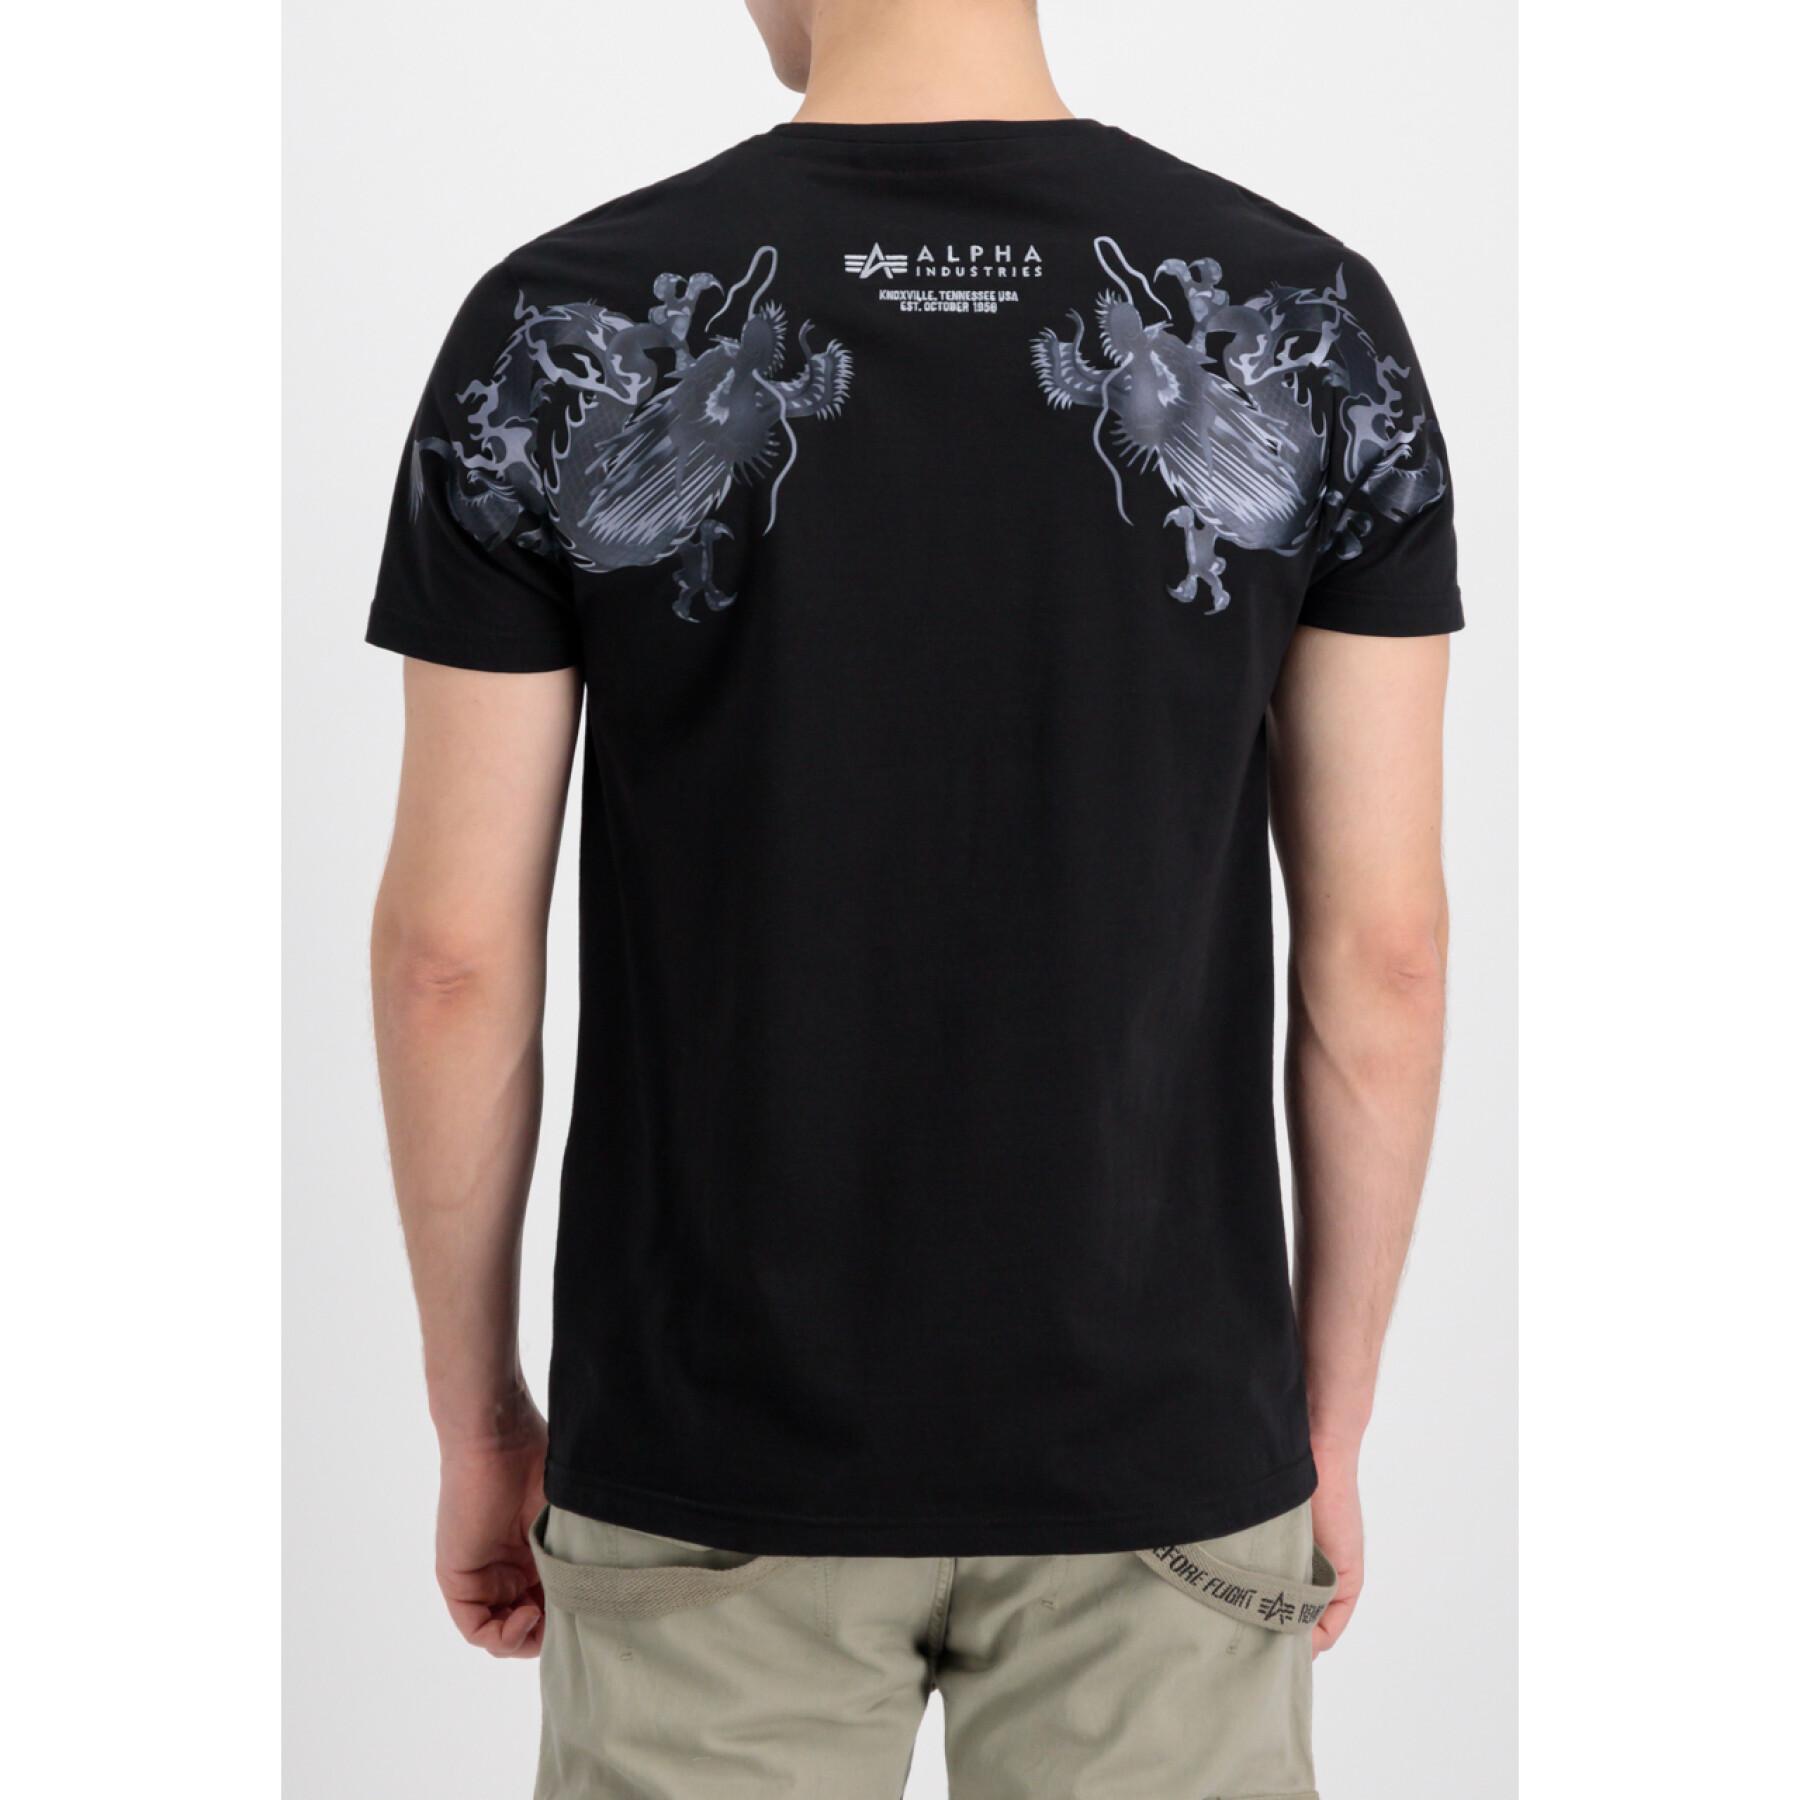 T-shirt Industries - Dragon EMB Streetwear T-Shirts Men - Alpha -